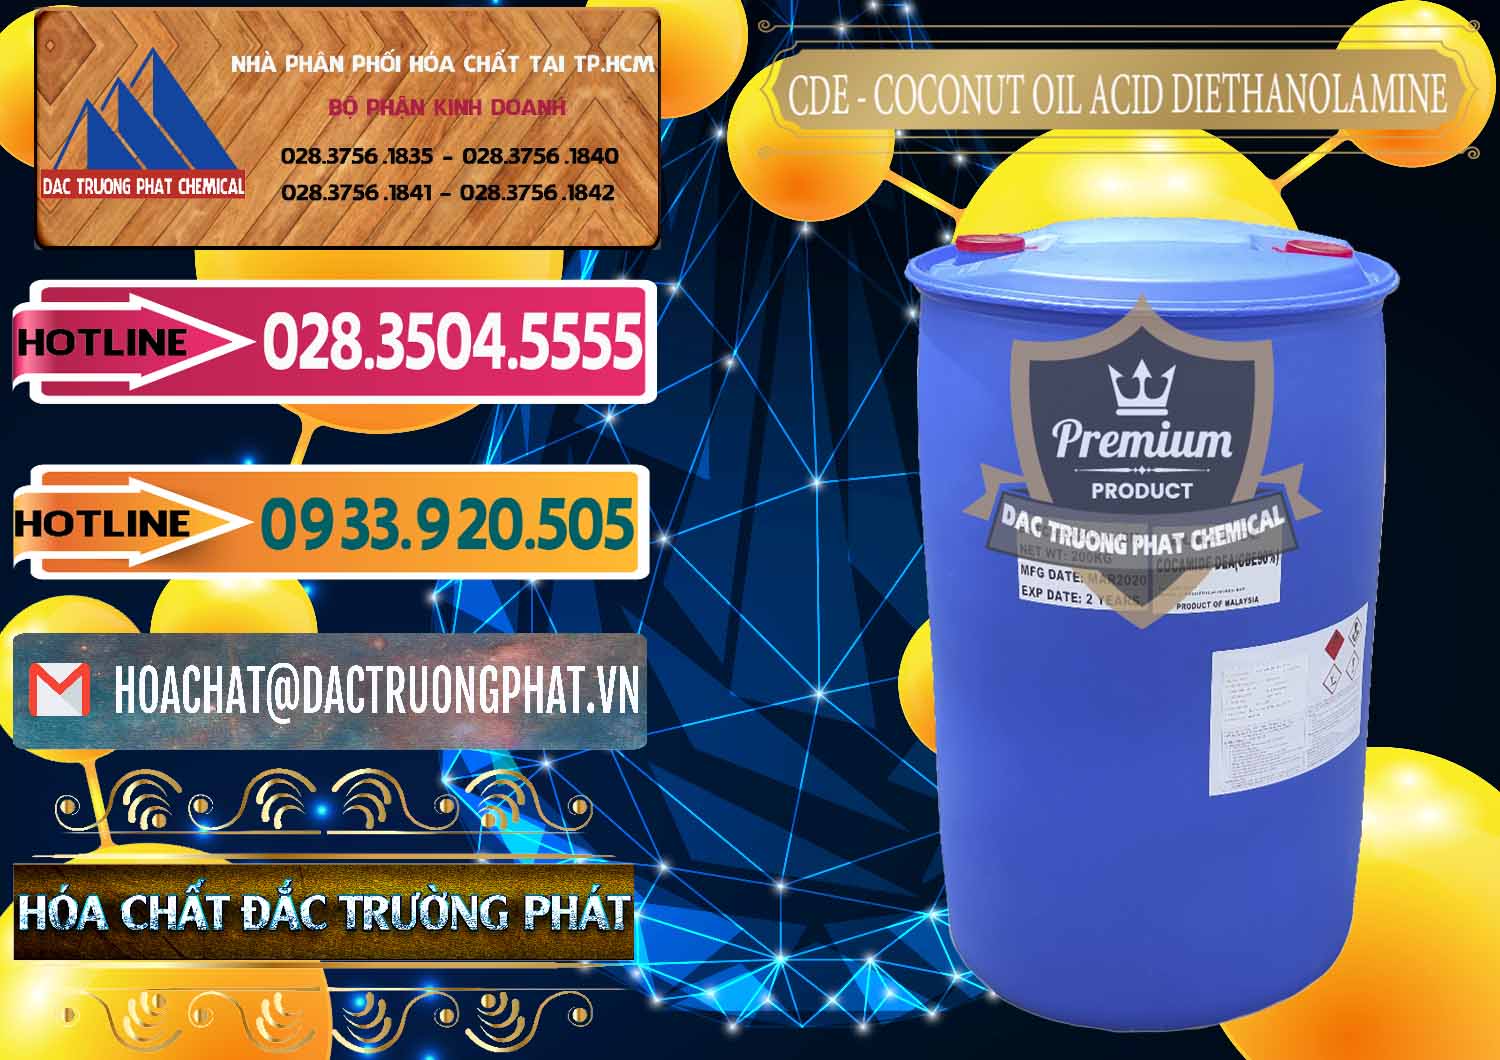 Cty chuyên cung cấp - bán CDE - Coconut Oil Acid Diethanolamine Mã Lai Malaysia - 0311 - Nơi nhập khẩu - phân phối hóa chất tại TP.HCM - dactruongphat.vn